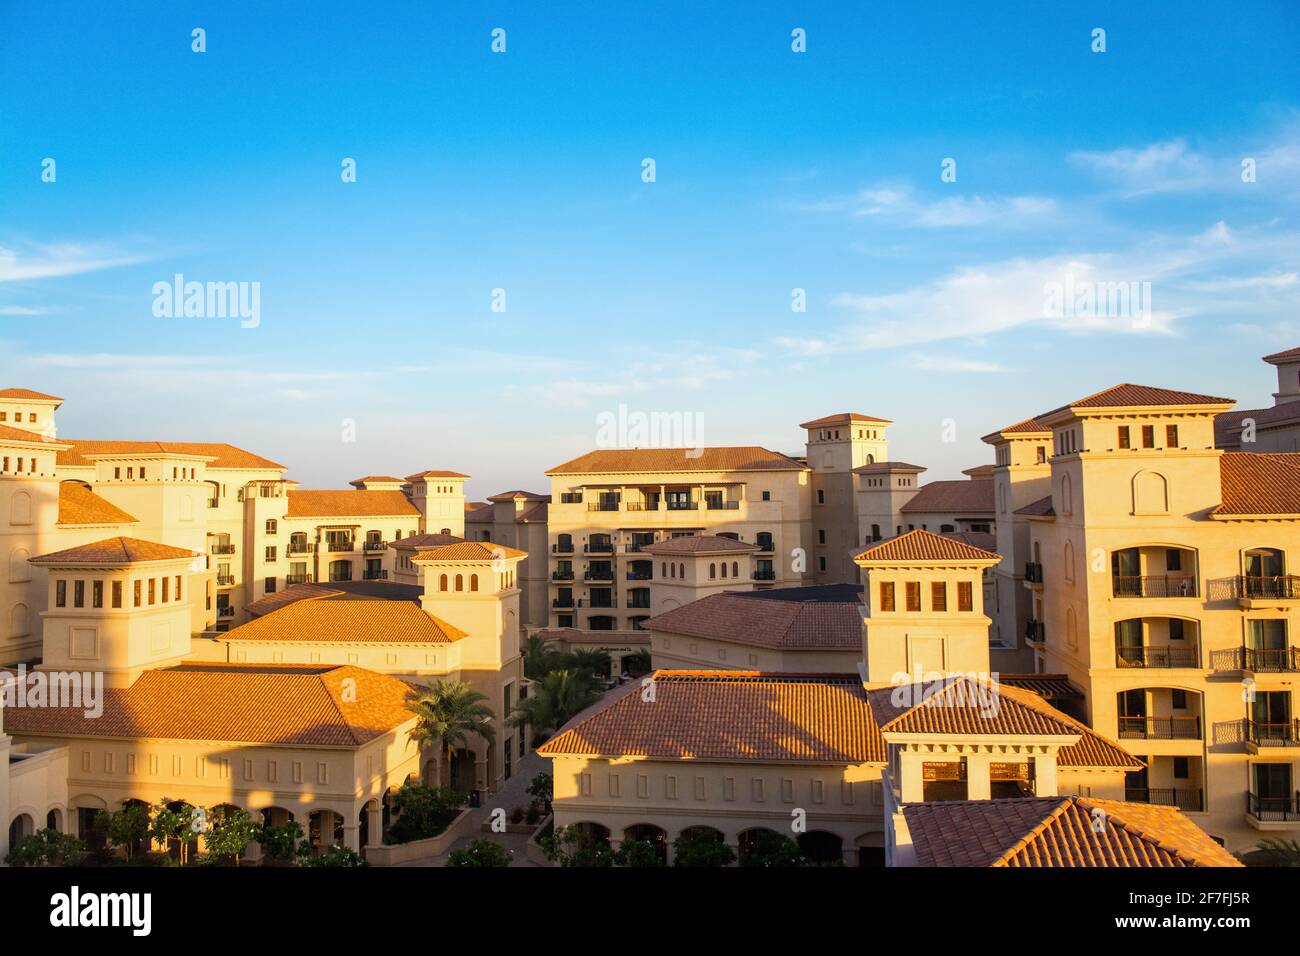 Saadiyat island, United Arab Emirates - September 17, 2020: Luxury hotel St.Regis Saadiyat on famous Abu Dhabi resort Saadiyat island Stock Photo